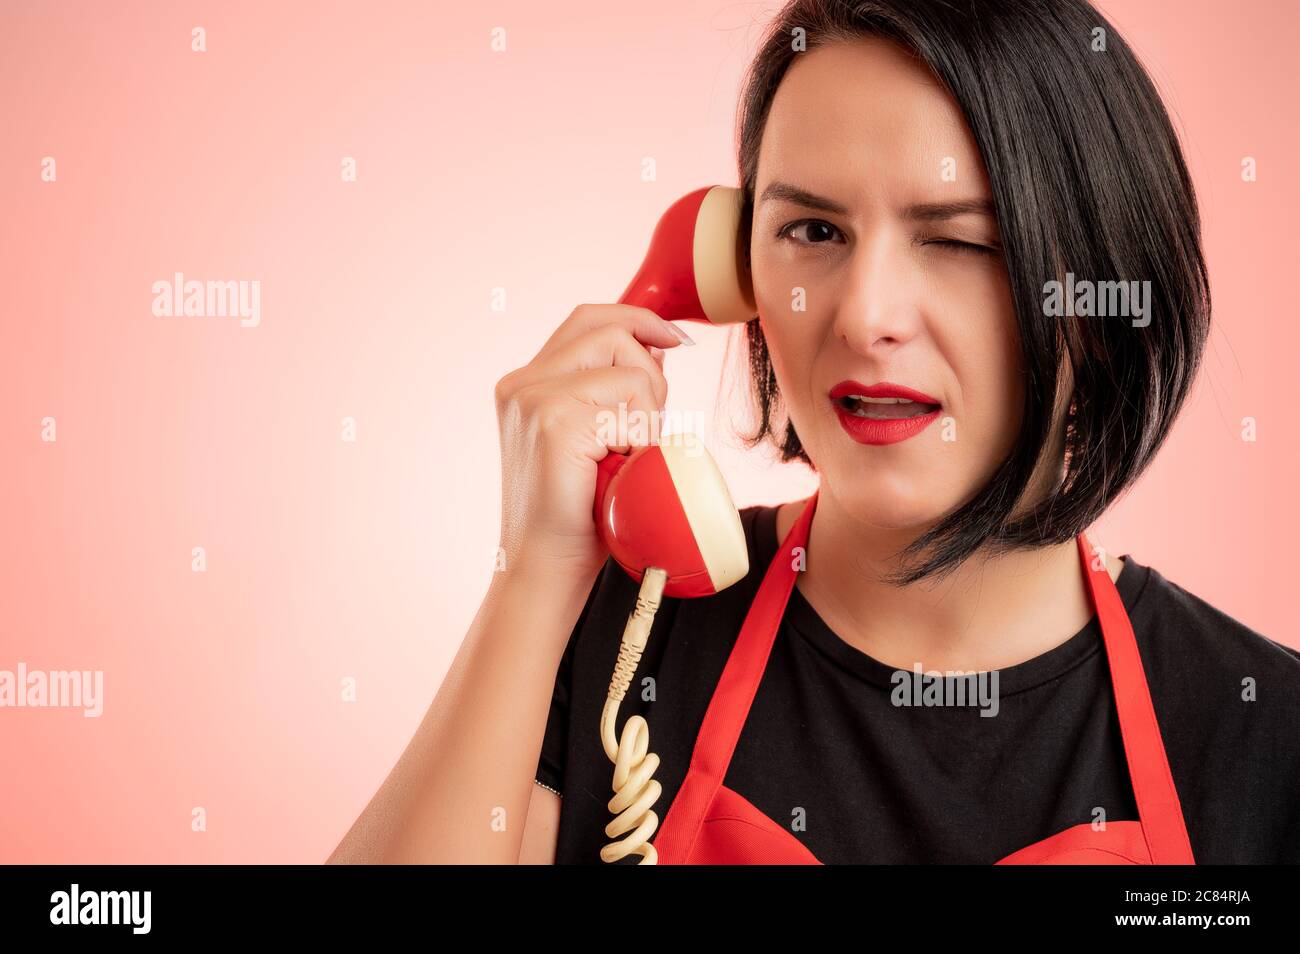 Portrait en gros plan d'une femme de supermarché employée dans un tablier rouge et un t-shirt noir parlant à un ancien récepteur, isolé sur un fond rouge Banque D'Images